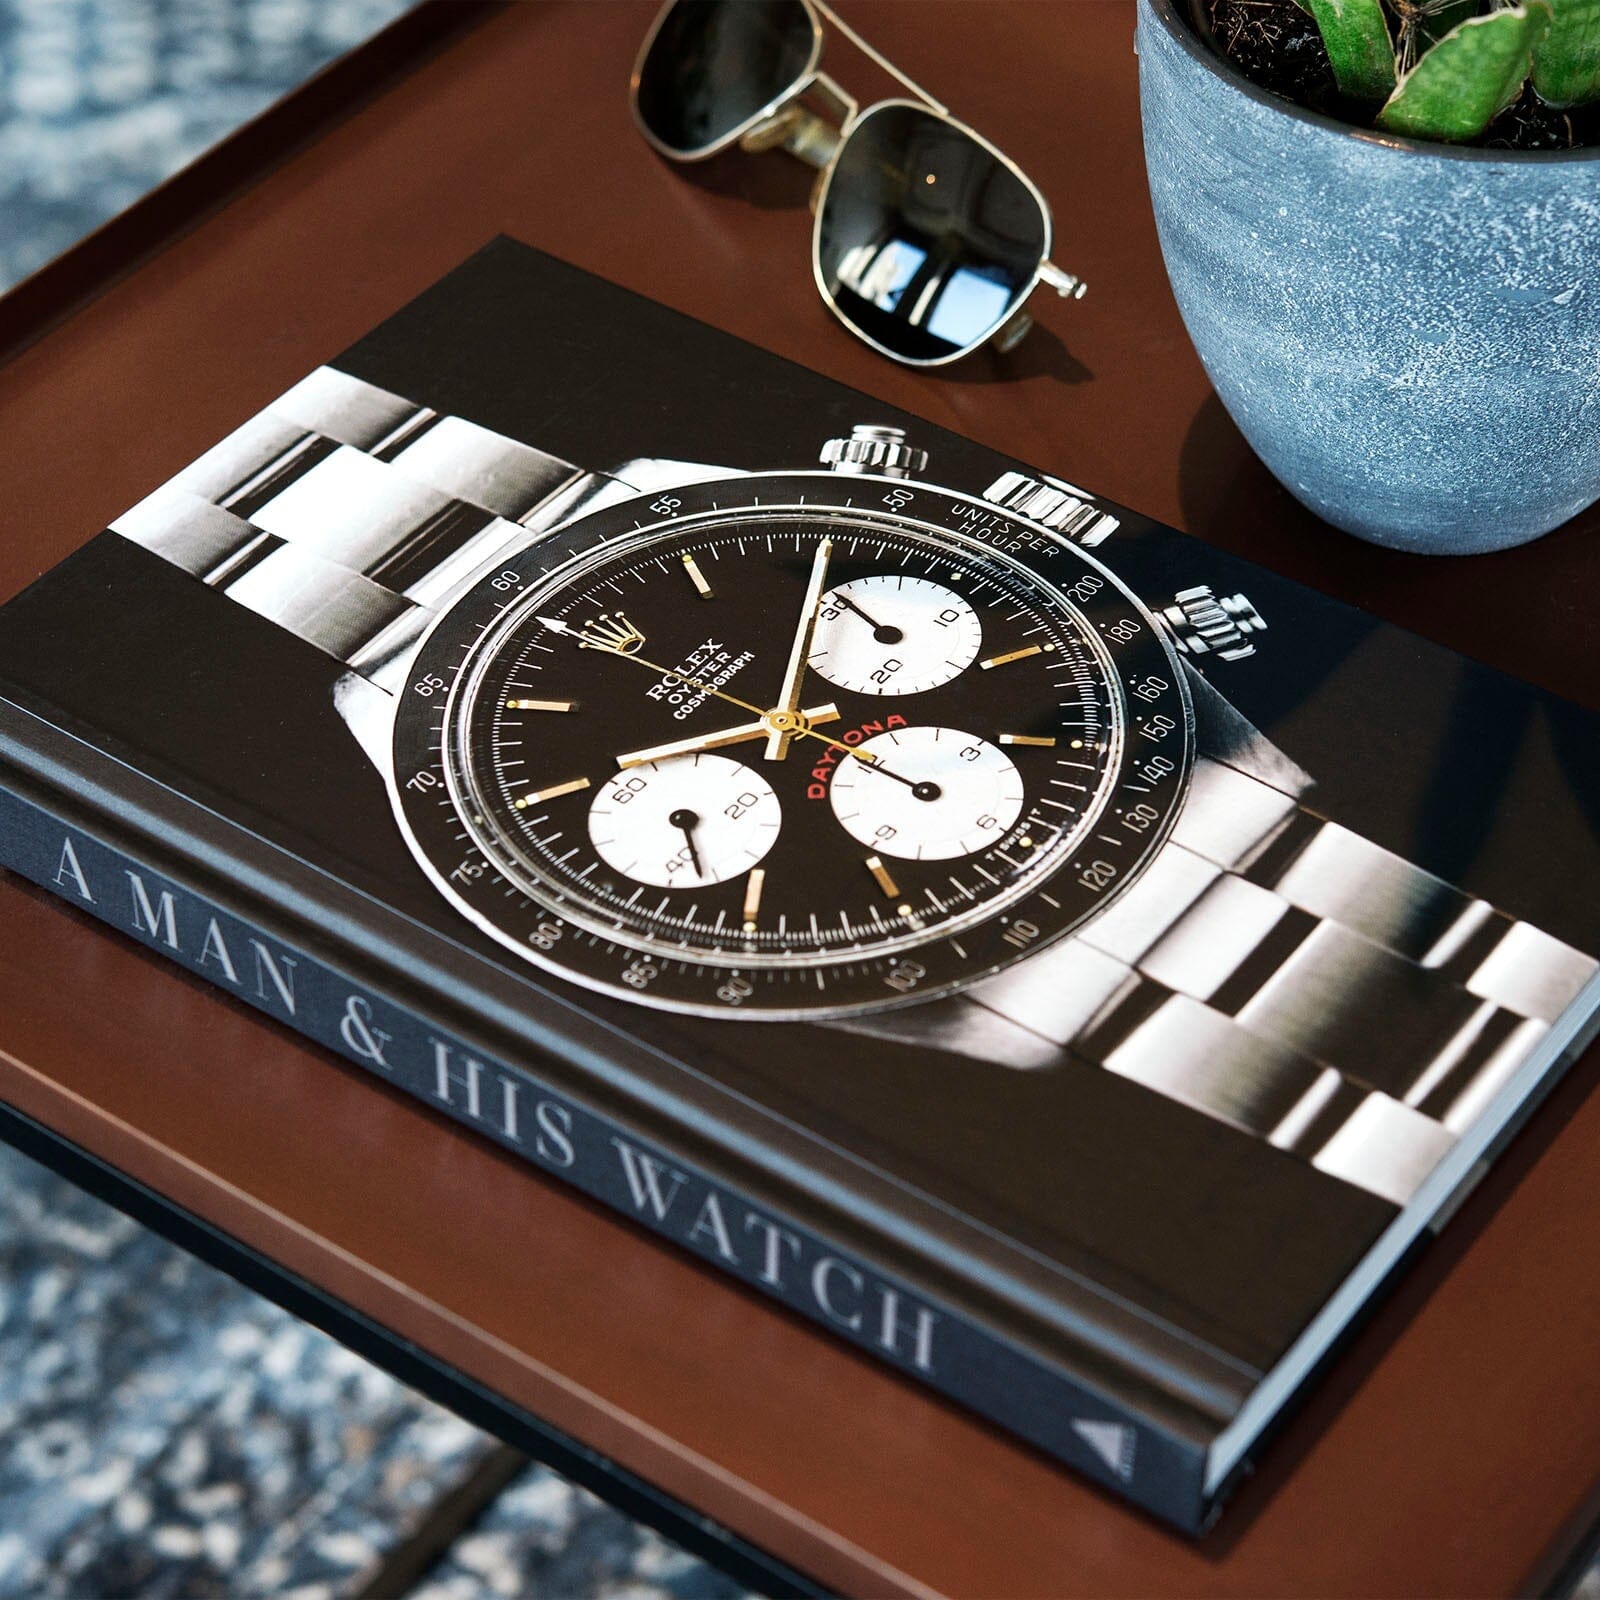 A Man and his watch book by Matt Hranek at Bulang and Sons store